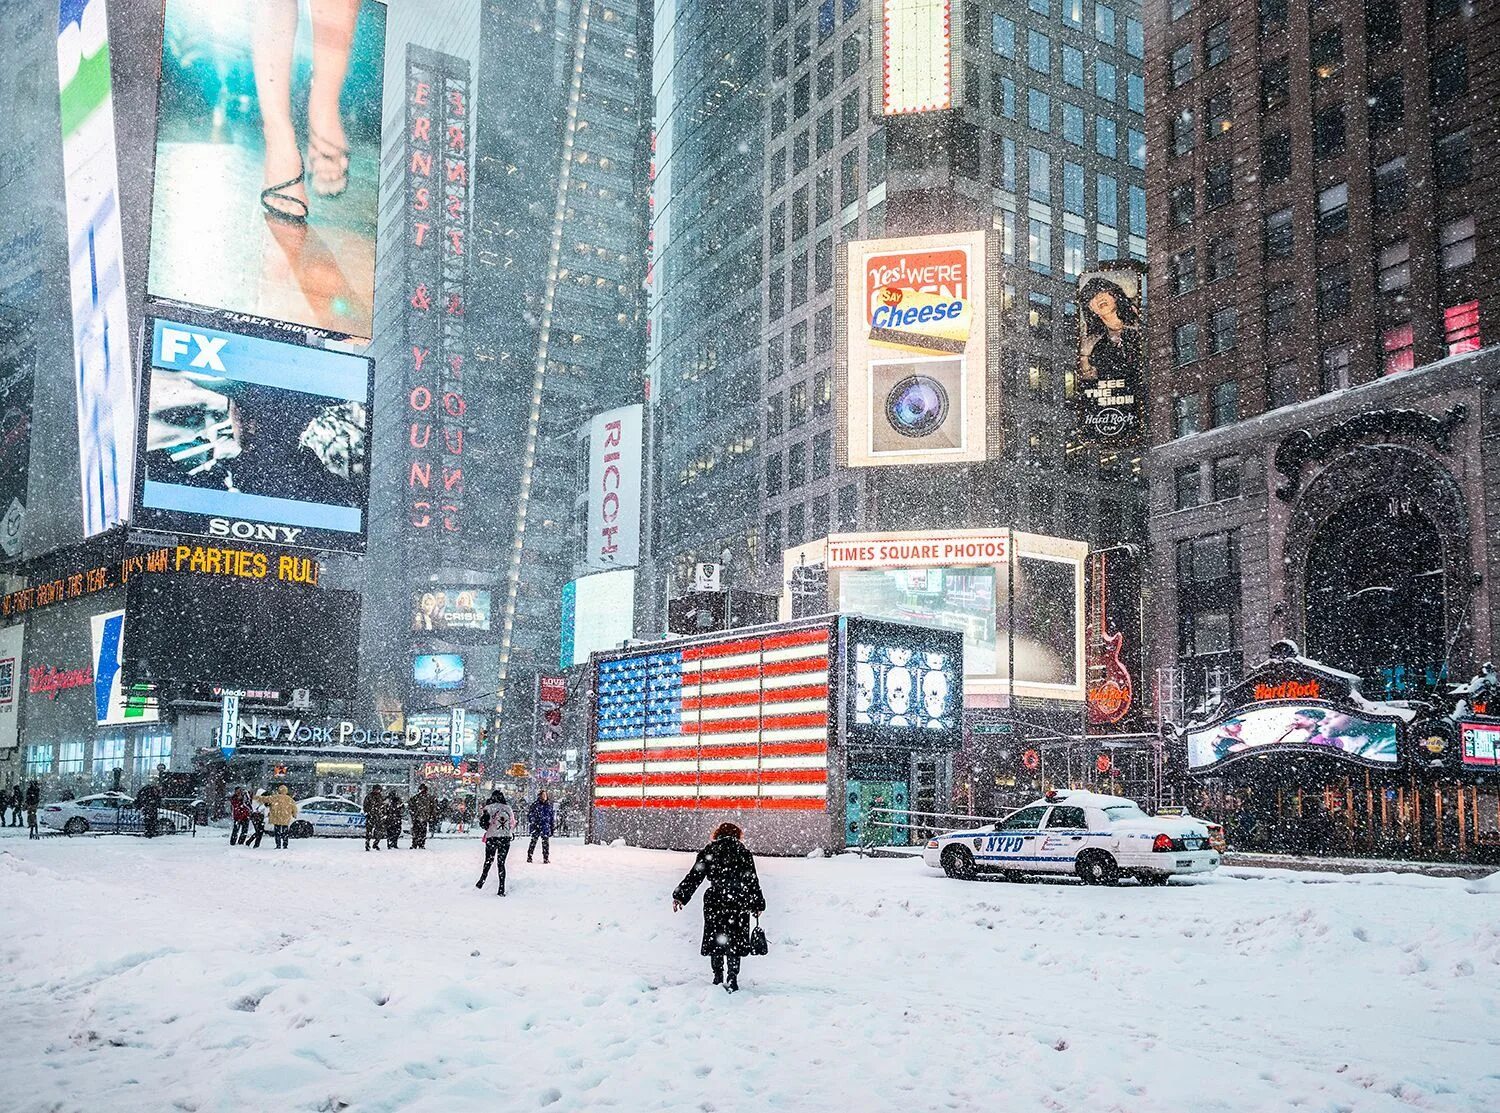 Америка зимнее время. Нью Йорк зимний Манхэттен. Зимний Нью-Йорк 5 Авеню. Нью-Йорк Таймс сквер зимой. Централ парк Нью Йорк зима.